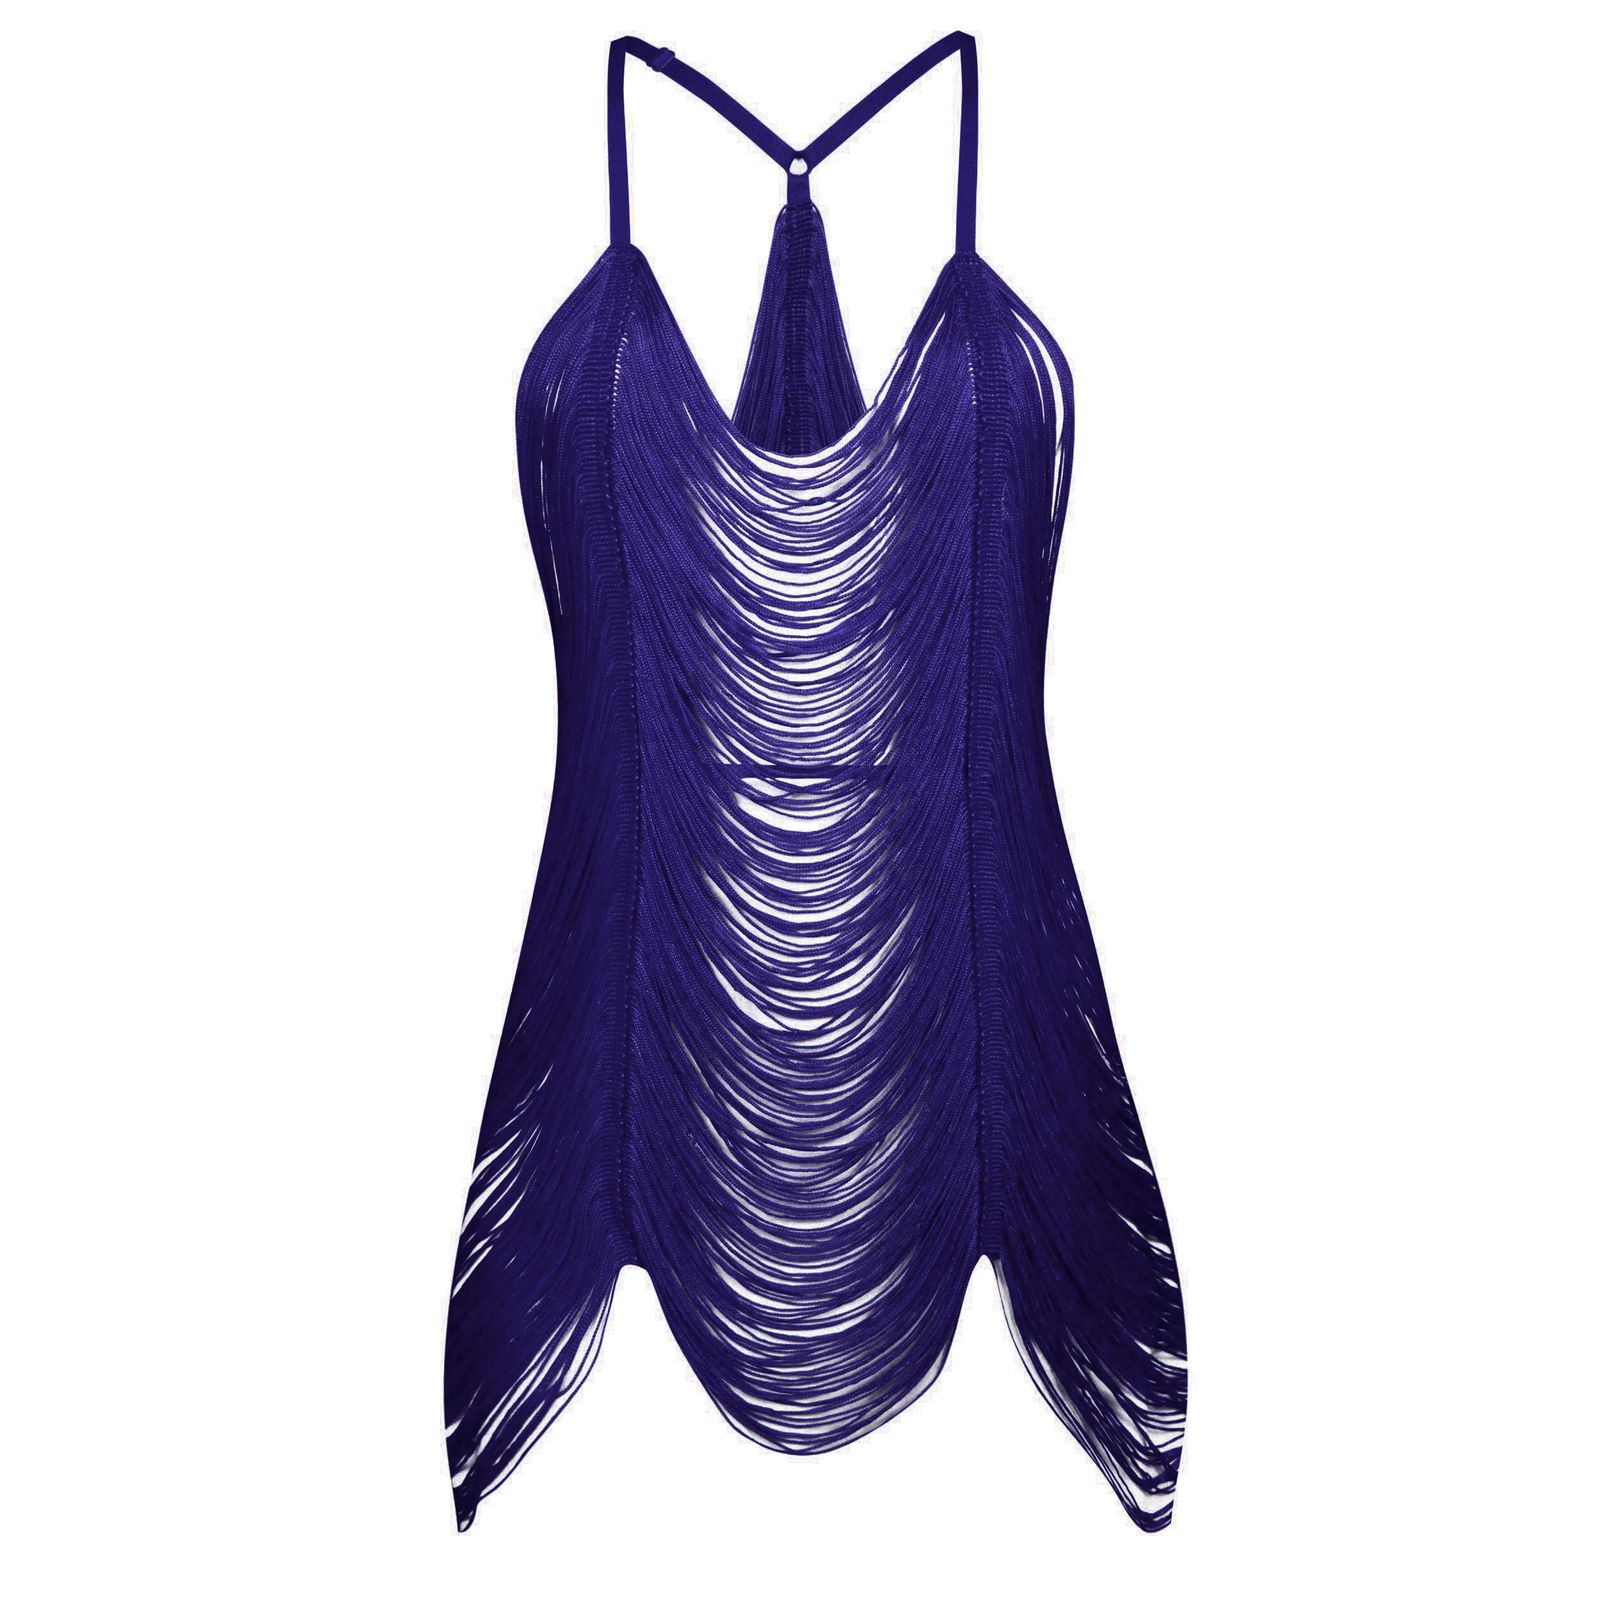 لباس خواب زنانه ماییلدا مدل ریش ریش کد 4438 رنگ سرمه ای -  - 1